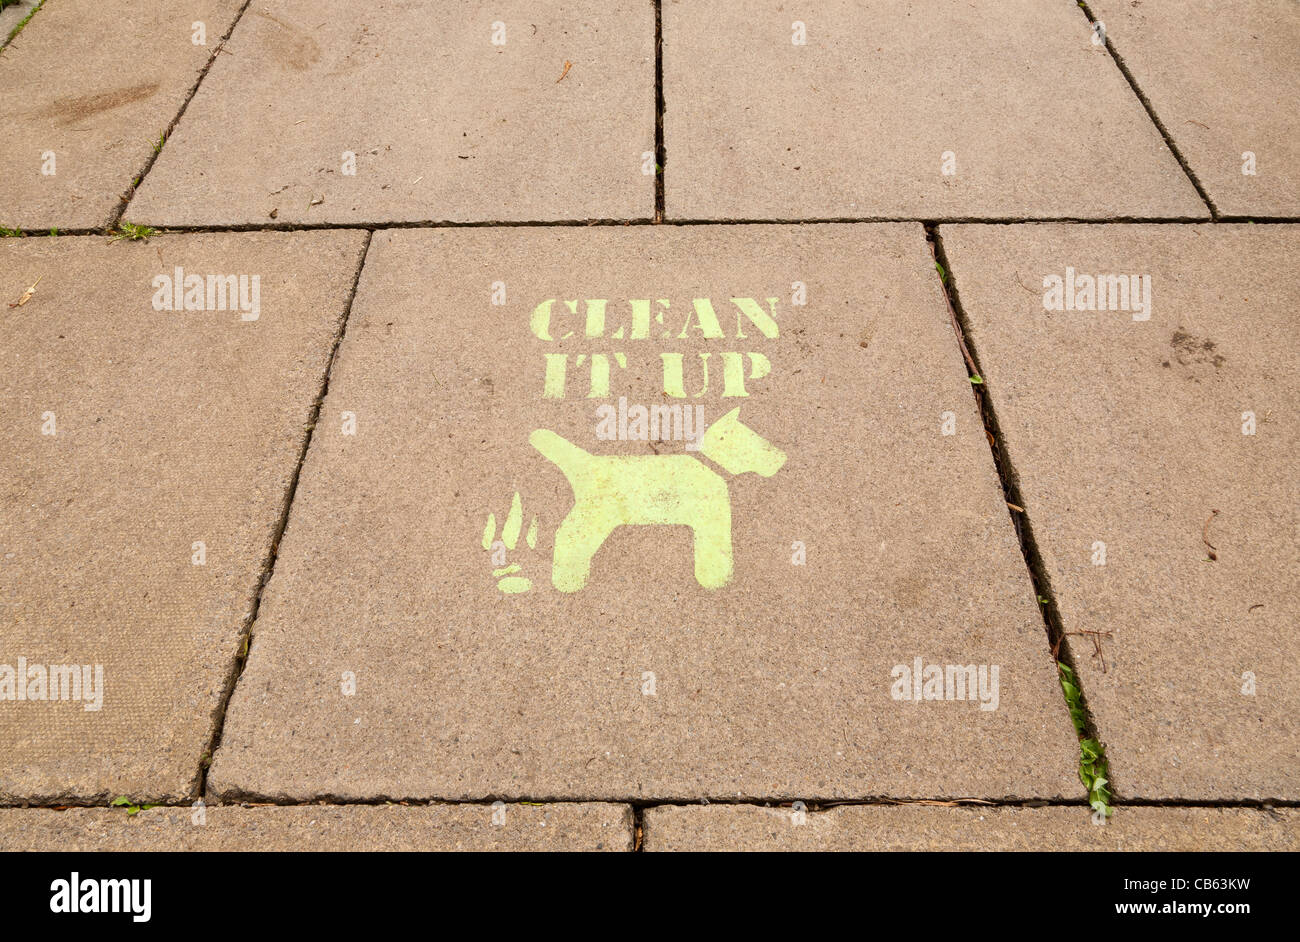 Eine Schablone-Nachricht auf einem Bürgersteig in Yorkshire UK vorgeschlagen Besitzer sollte bereinigen, nachdem ihre Hunde defecated haben Stockfoto